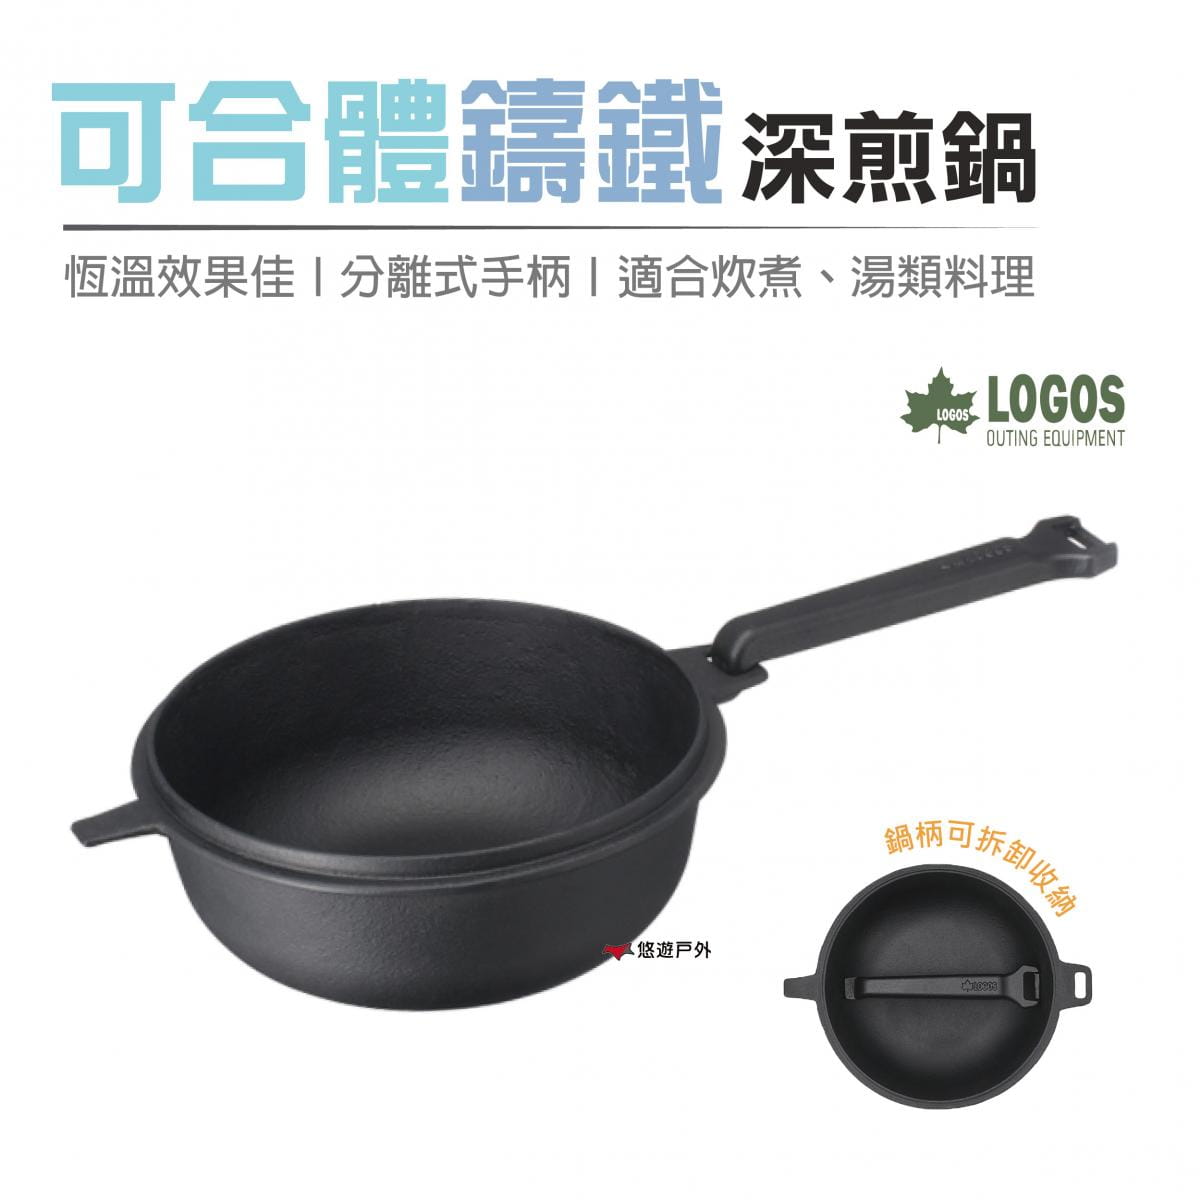 【日本LOGOS】 可合體鑄鐵深煎鍋M_LG81062236 (悠遊戶外) 0